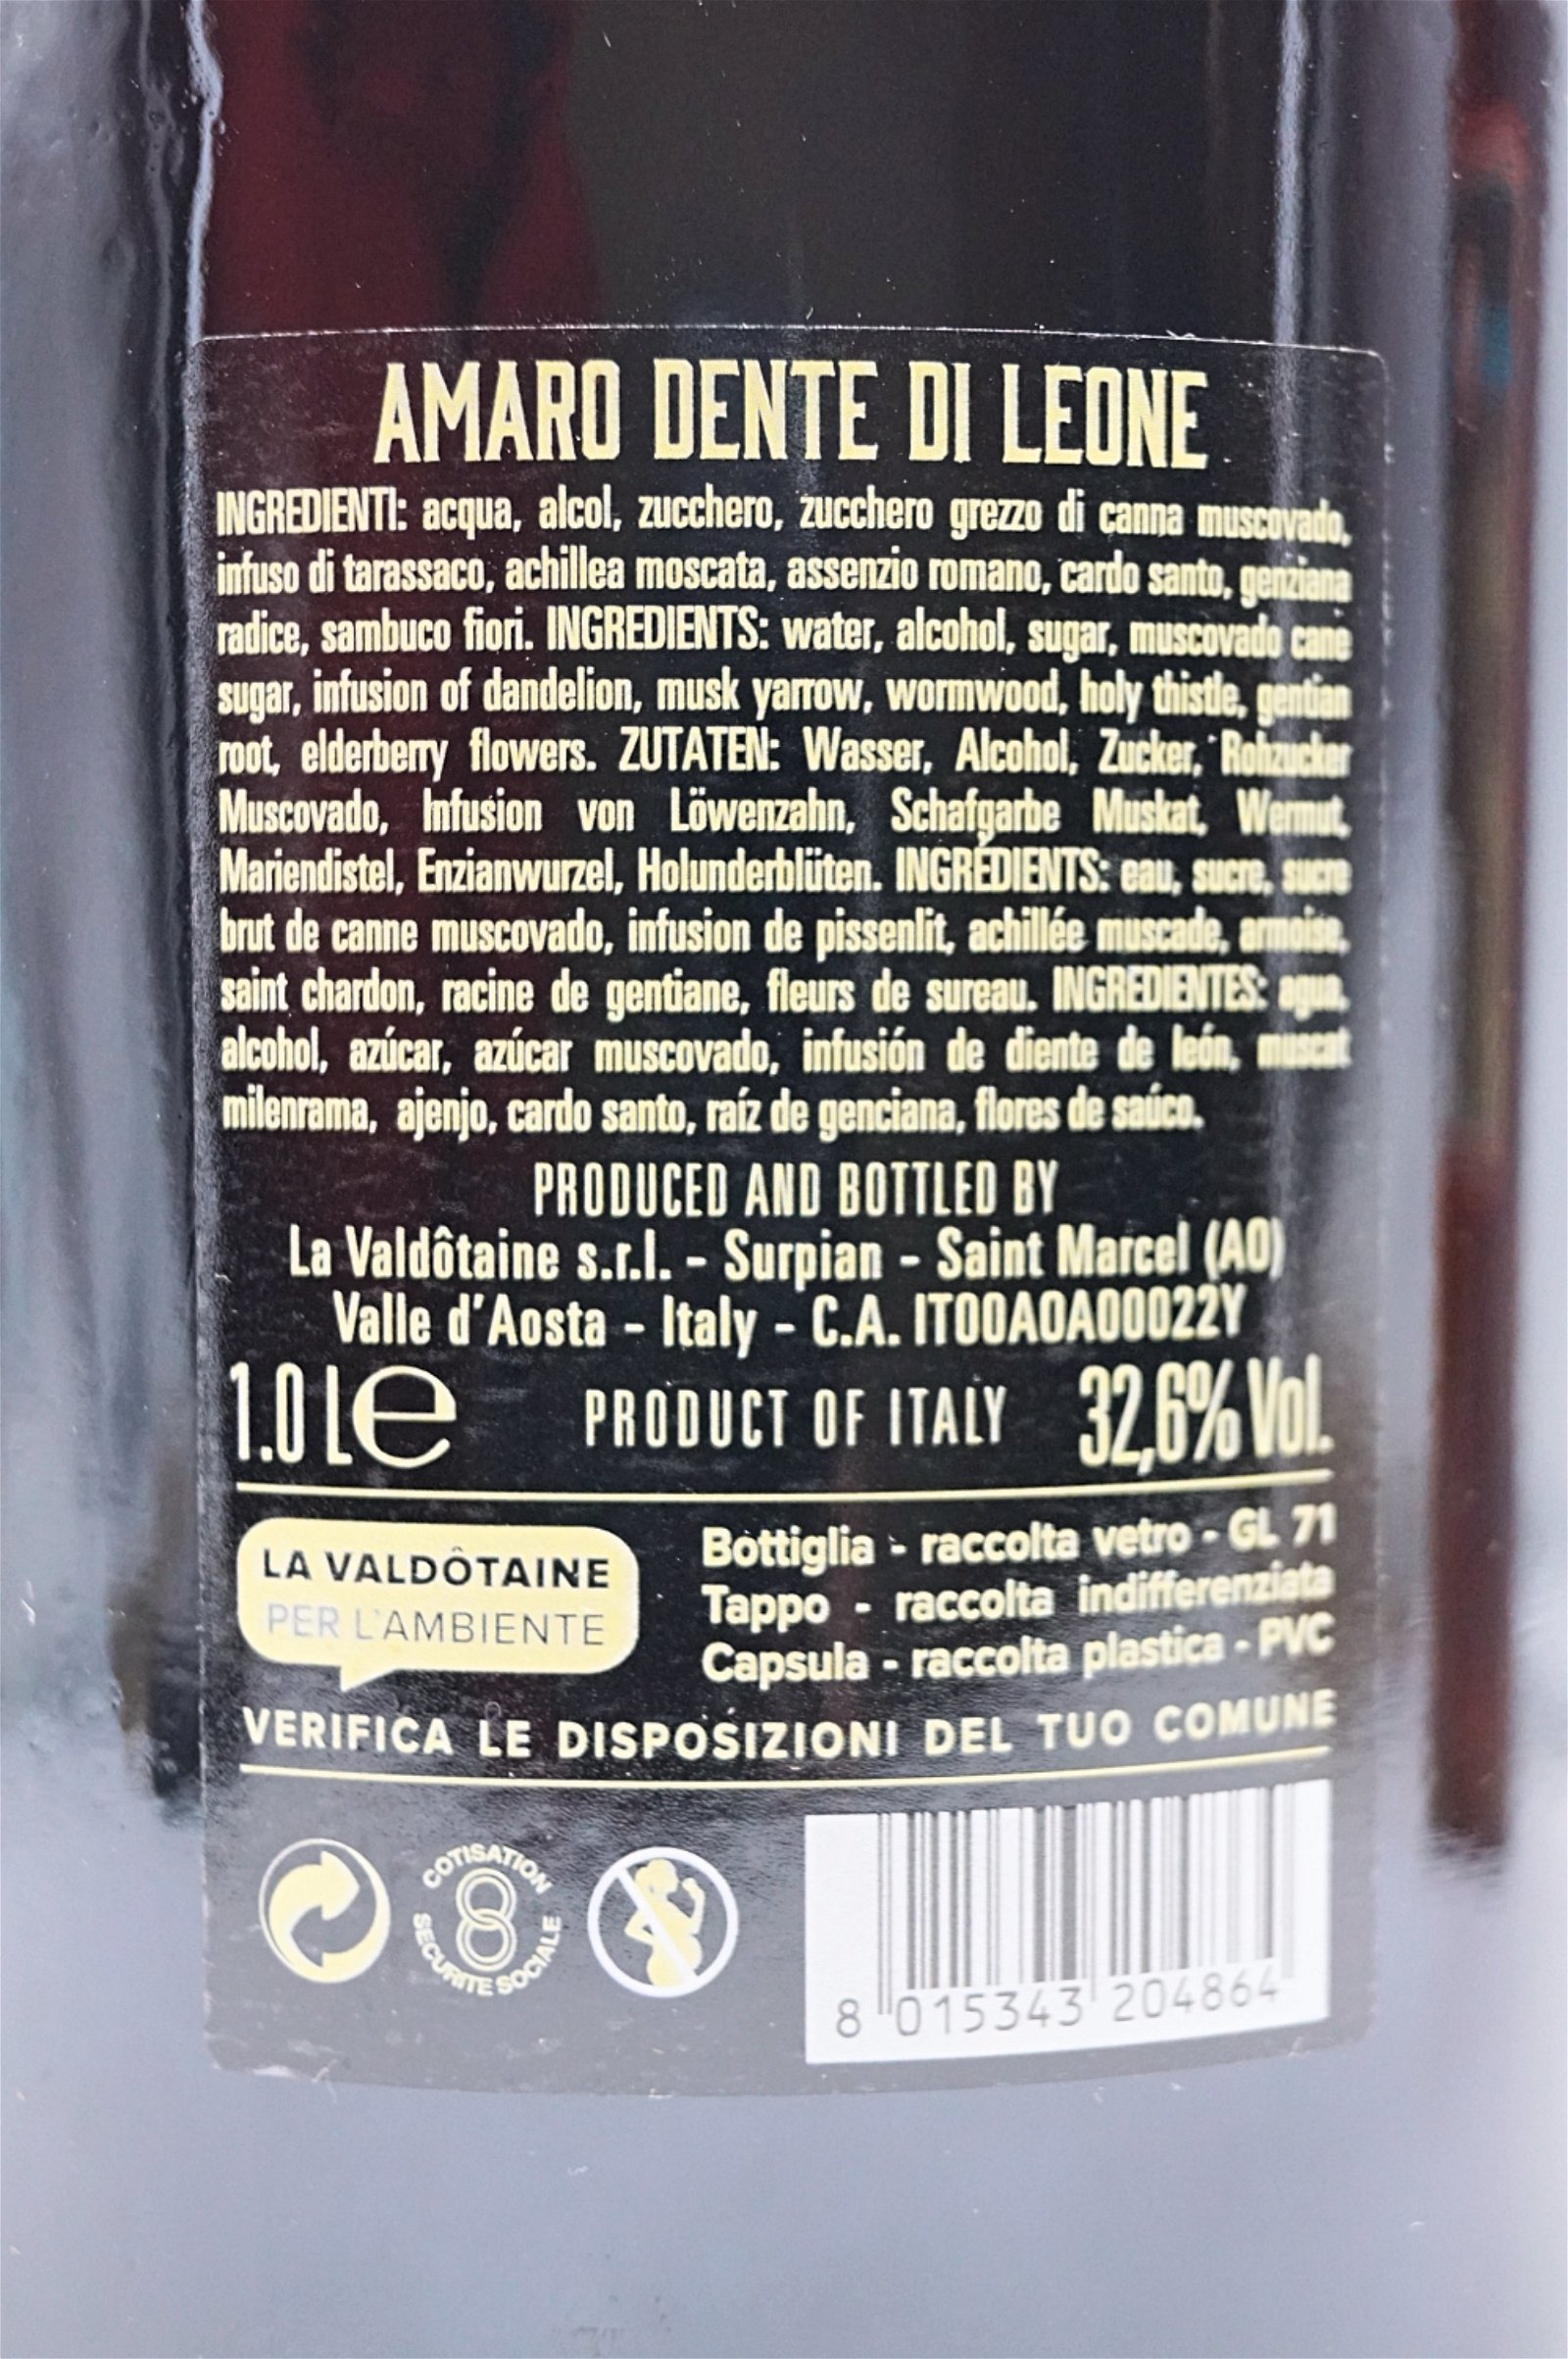 La Valdotaine Amaro Dente di Leone